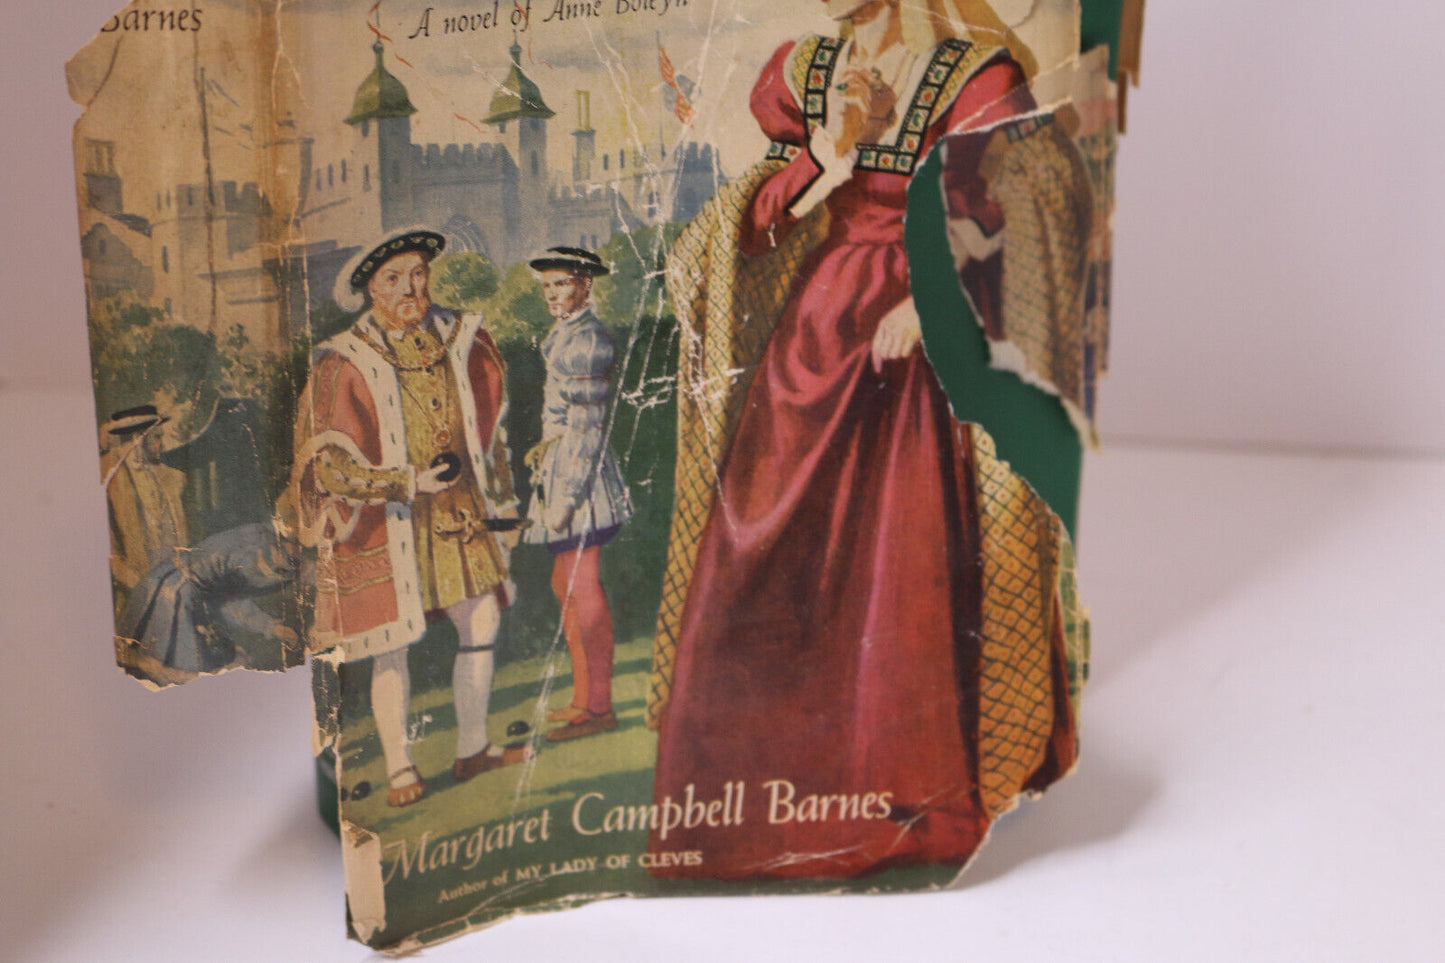 Brief Gaudy Hour A Novel Of Anne Boleyn By Margaret C Barnes Hcdj 1949